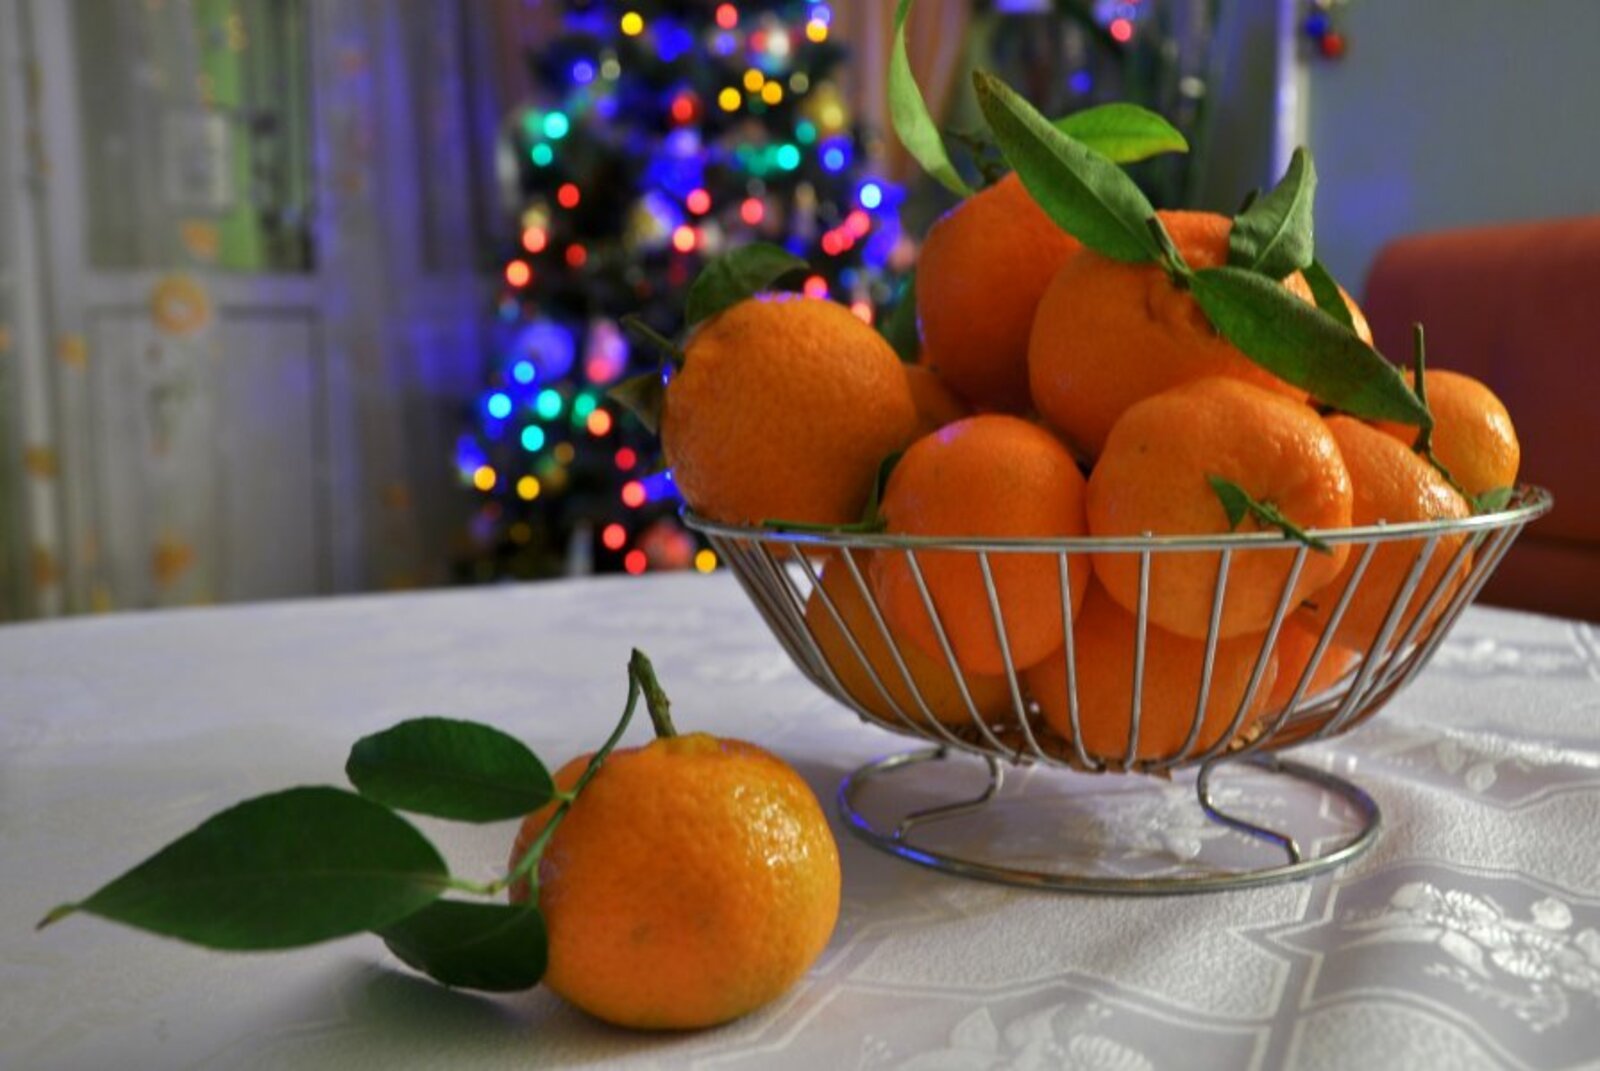 Мандарины на тарелке. Мандарины новый год. Натюрморт с мандаринами. Мандарины на столе. Мандарины на новогоднем столе.